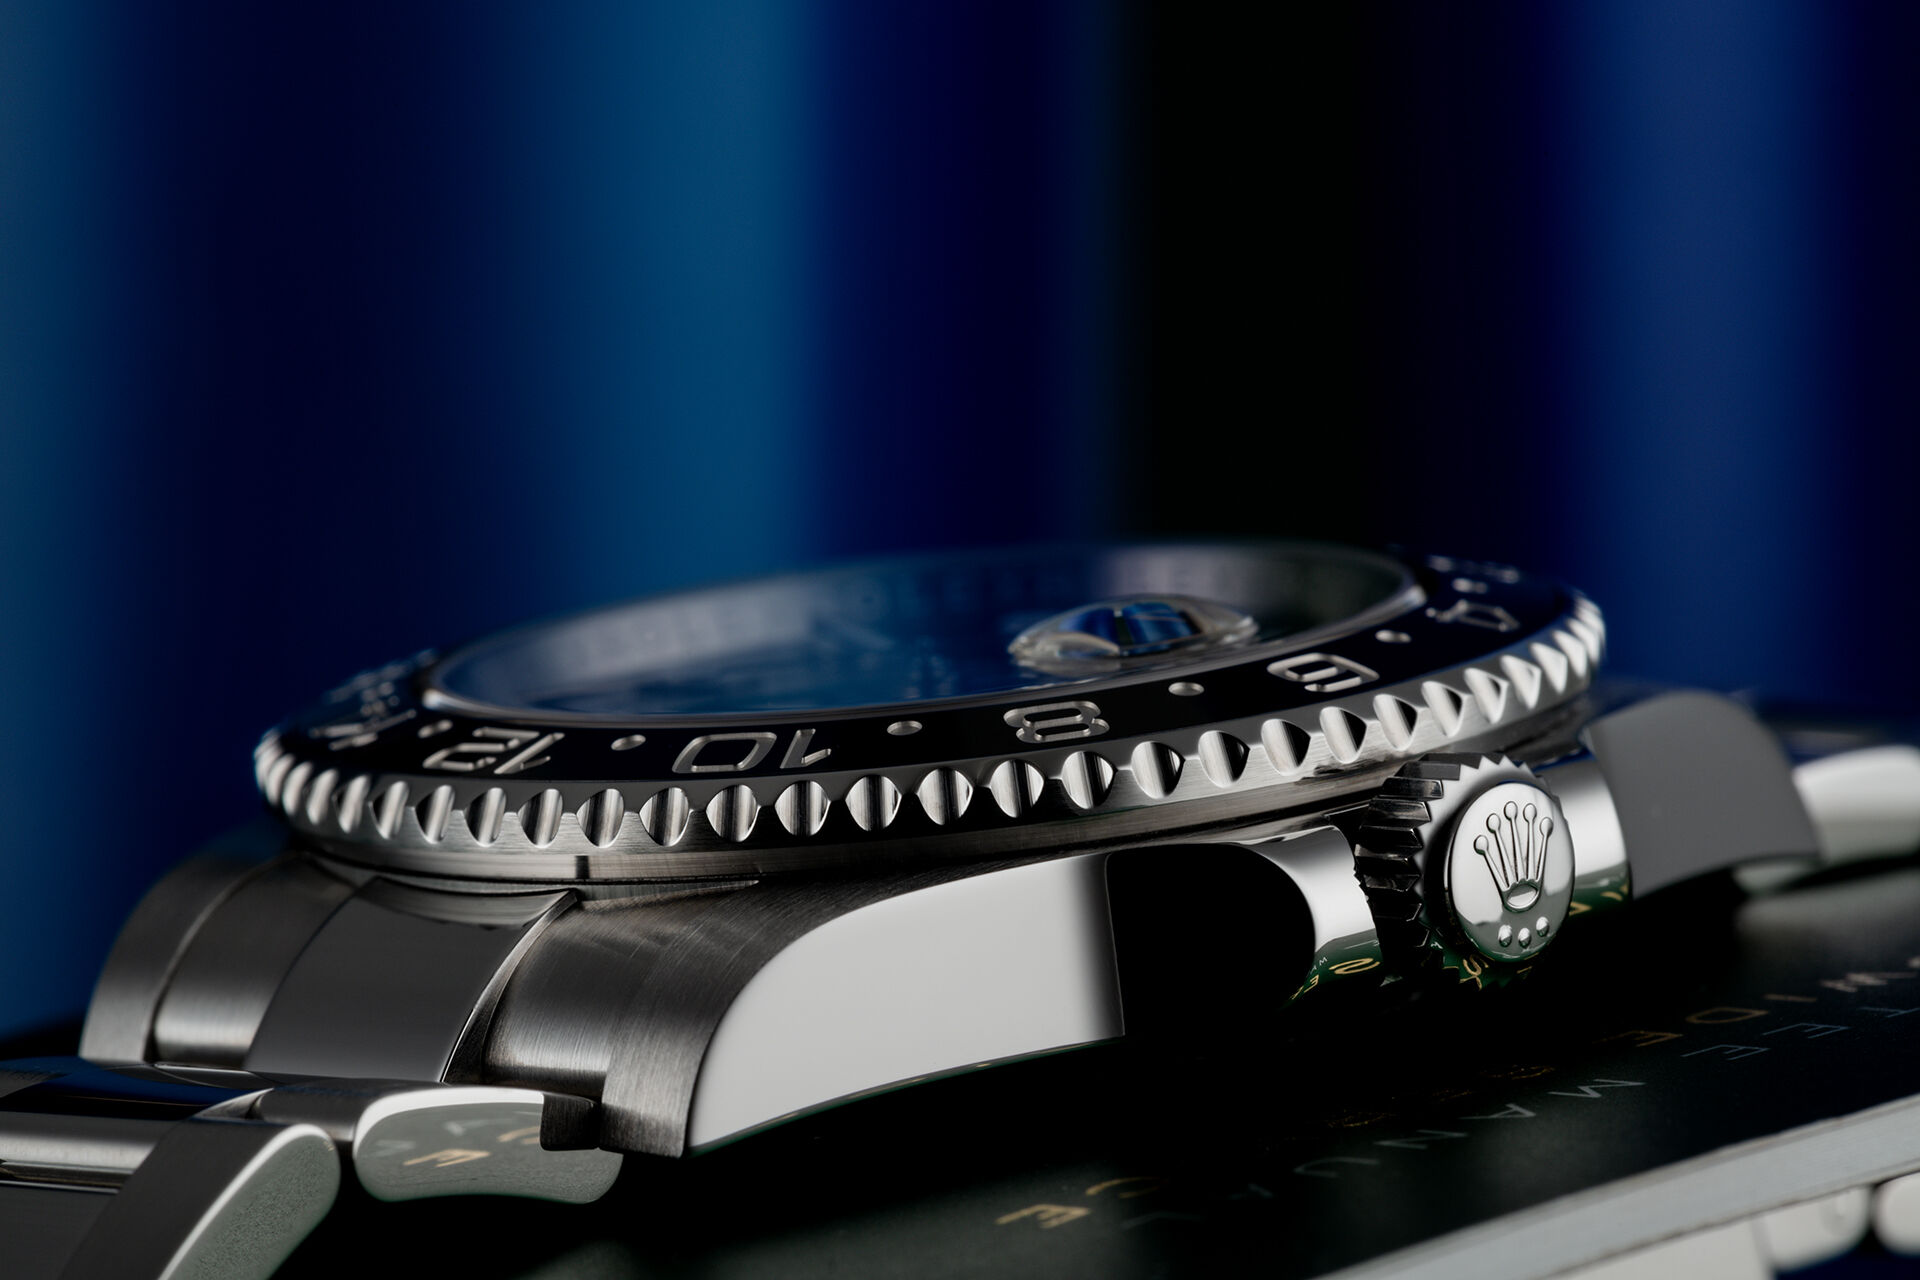 ref 116710LN | Rolex Warranty to 2022 | Rolex GMT-Master II